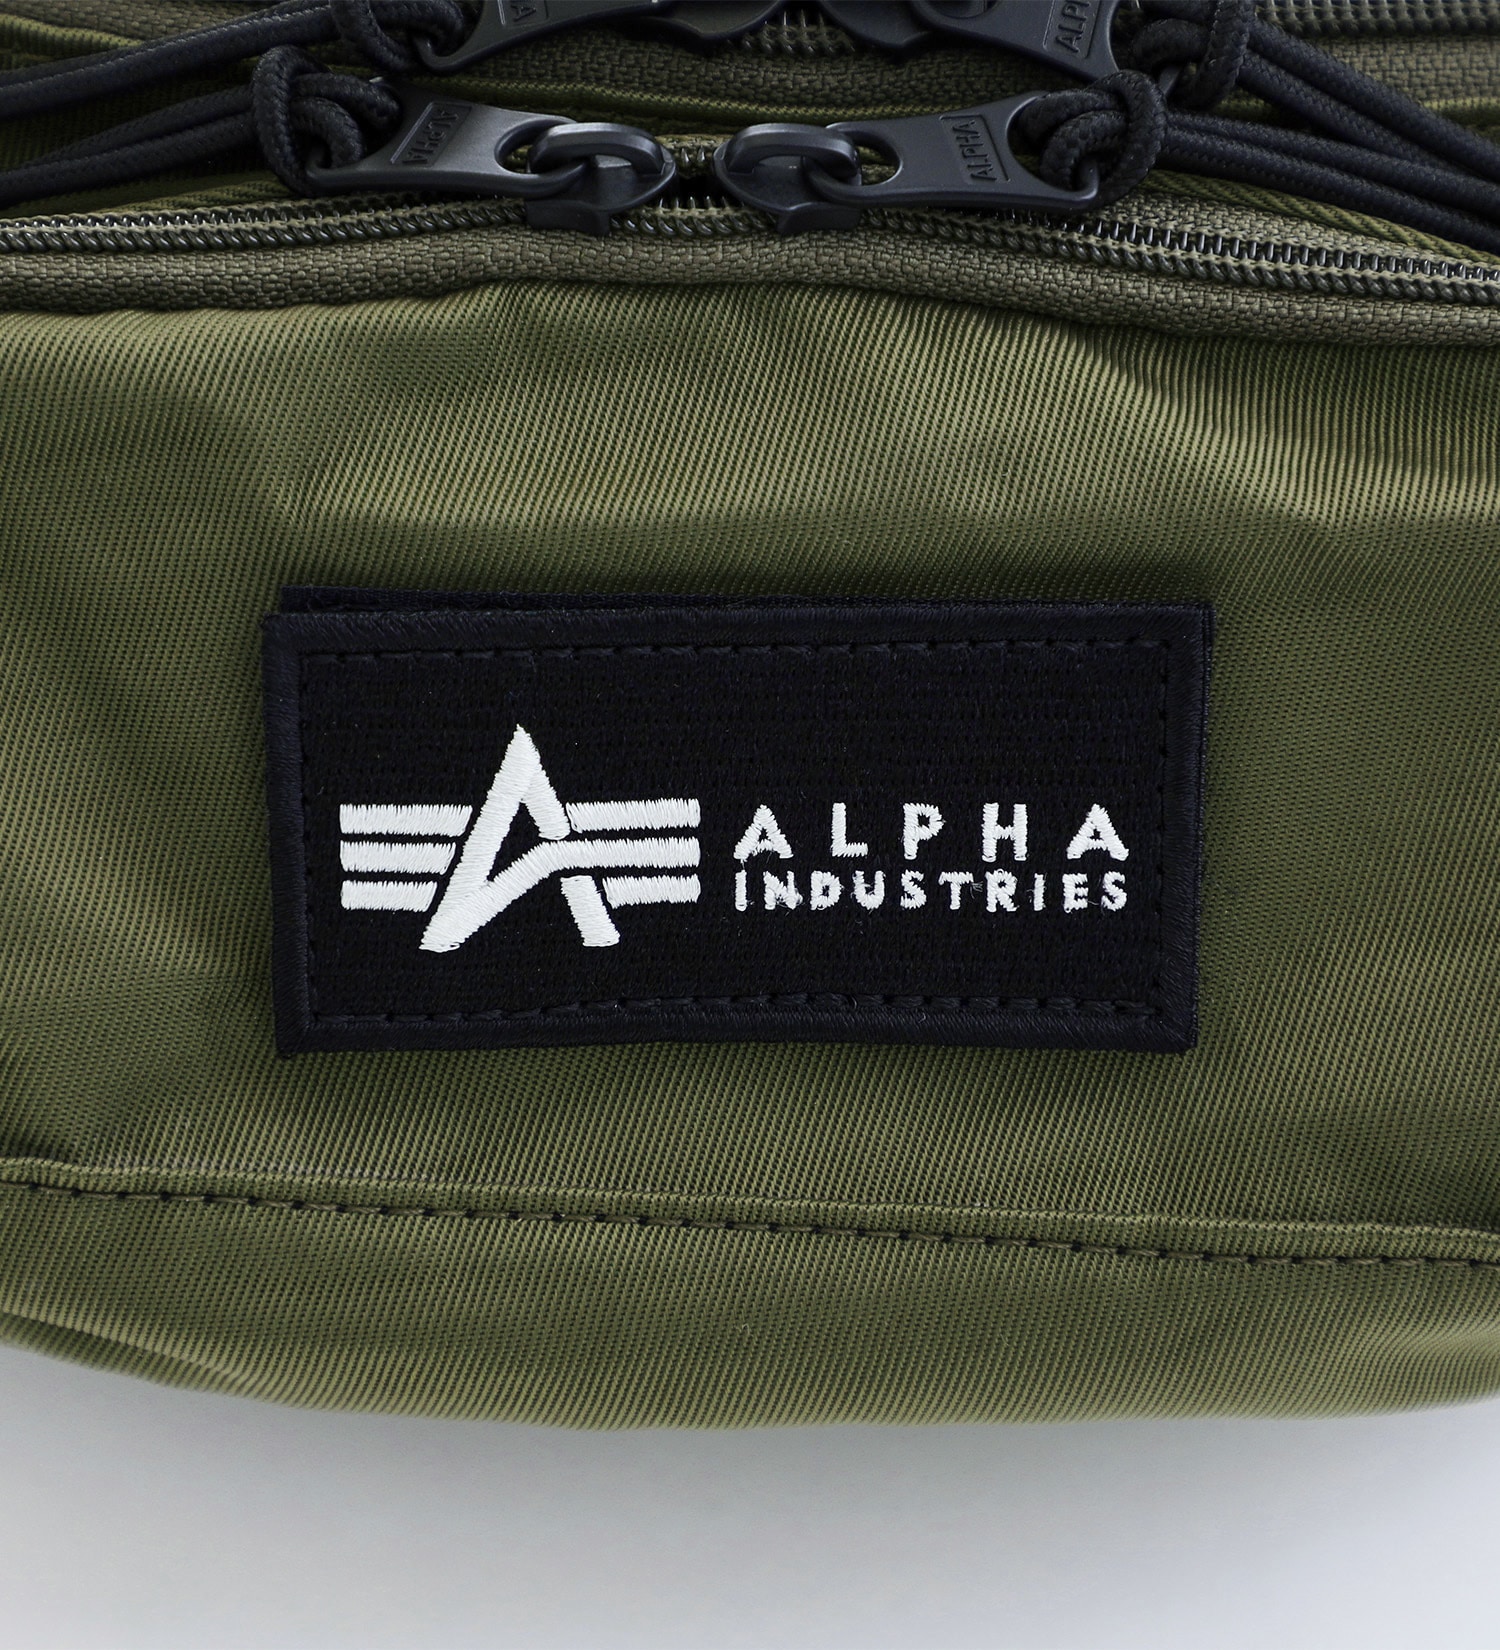 ALPHA(アルファ)のウエストバッグ|バッグ/ボディバッグ/ウェストポーチ/メンズ|オリーブ